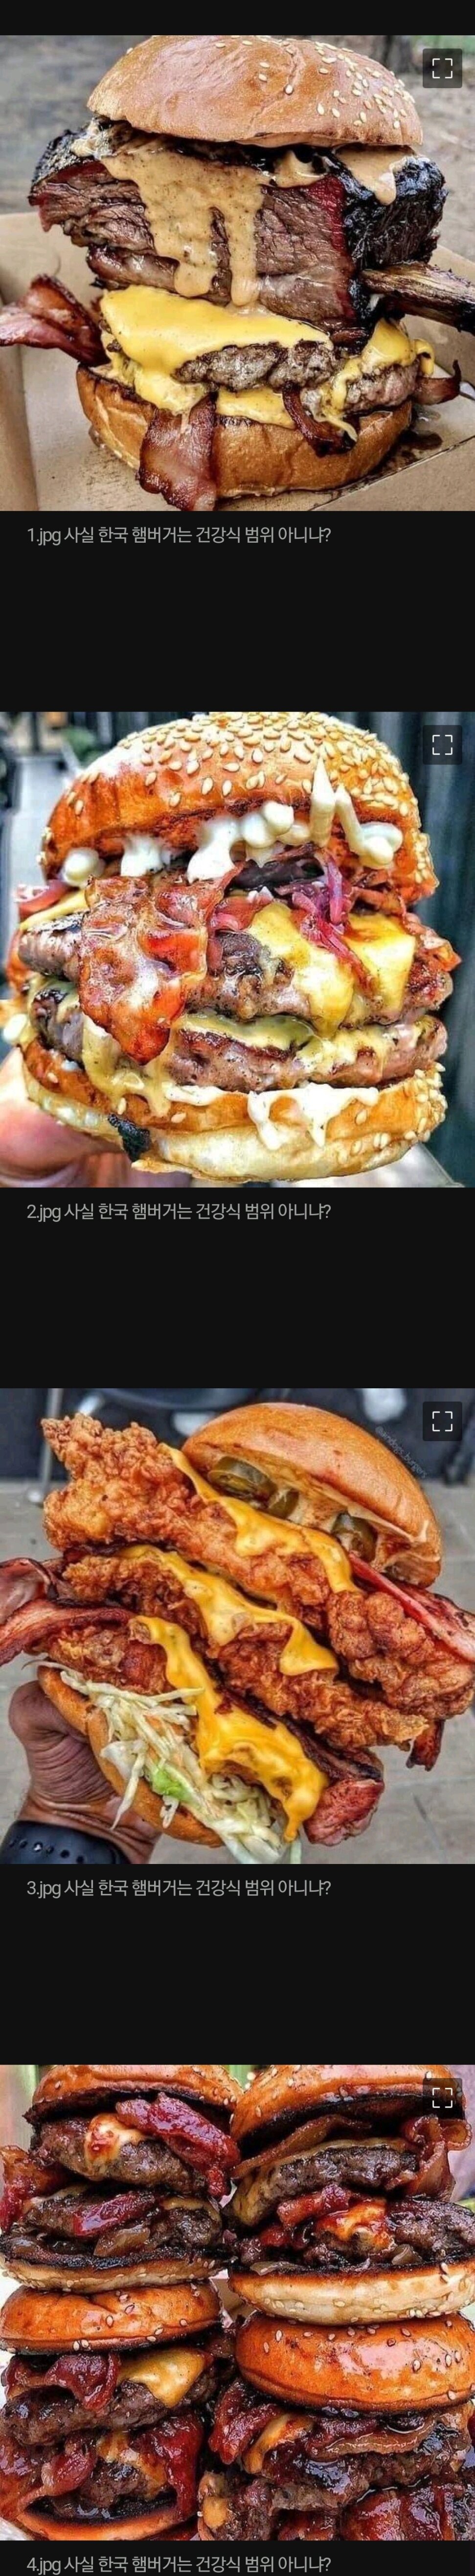 사실 한국 햄버거는 건강식 범위 아니냐?